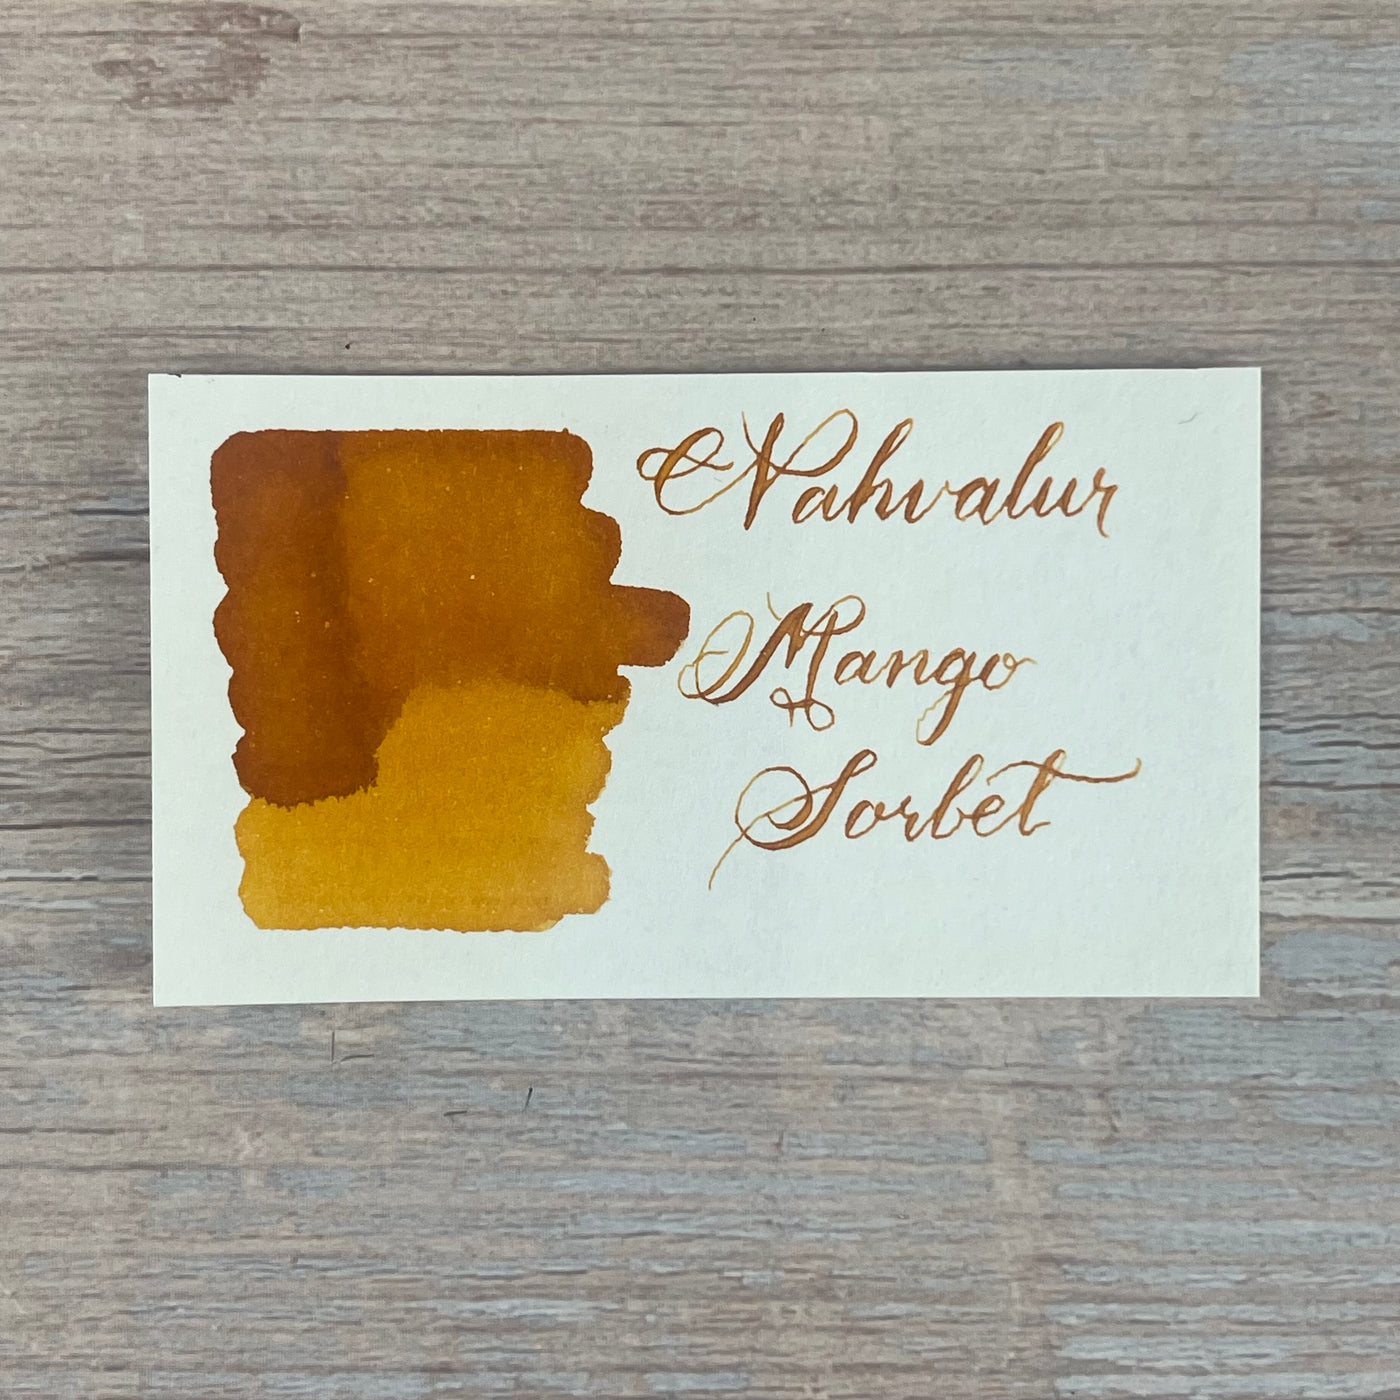 Nahvalur (Narwhal) Mango Sorbet - 20ml Bottled Ink